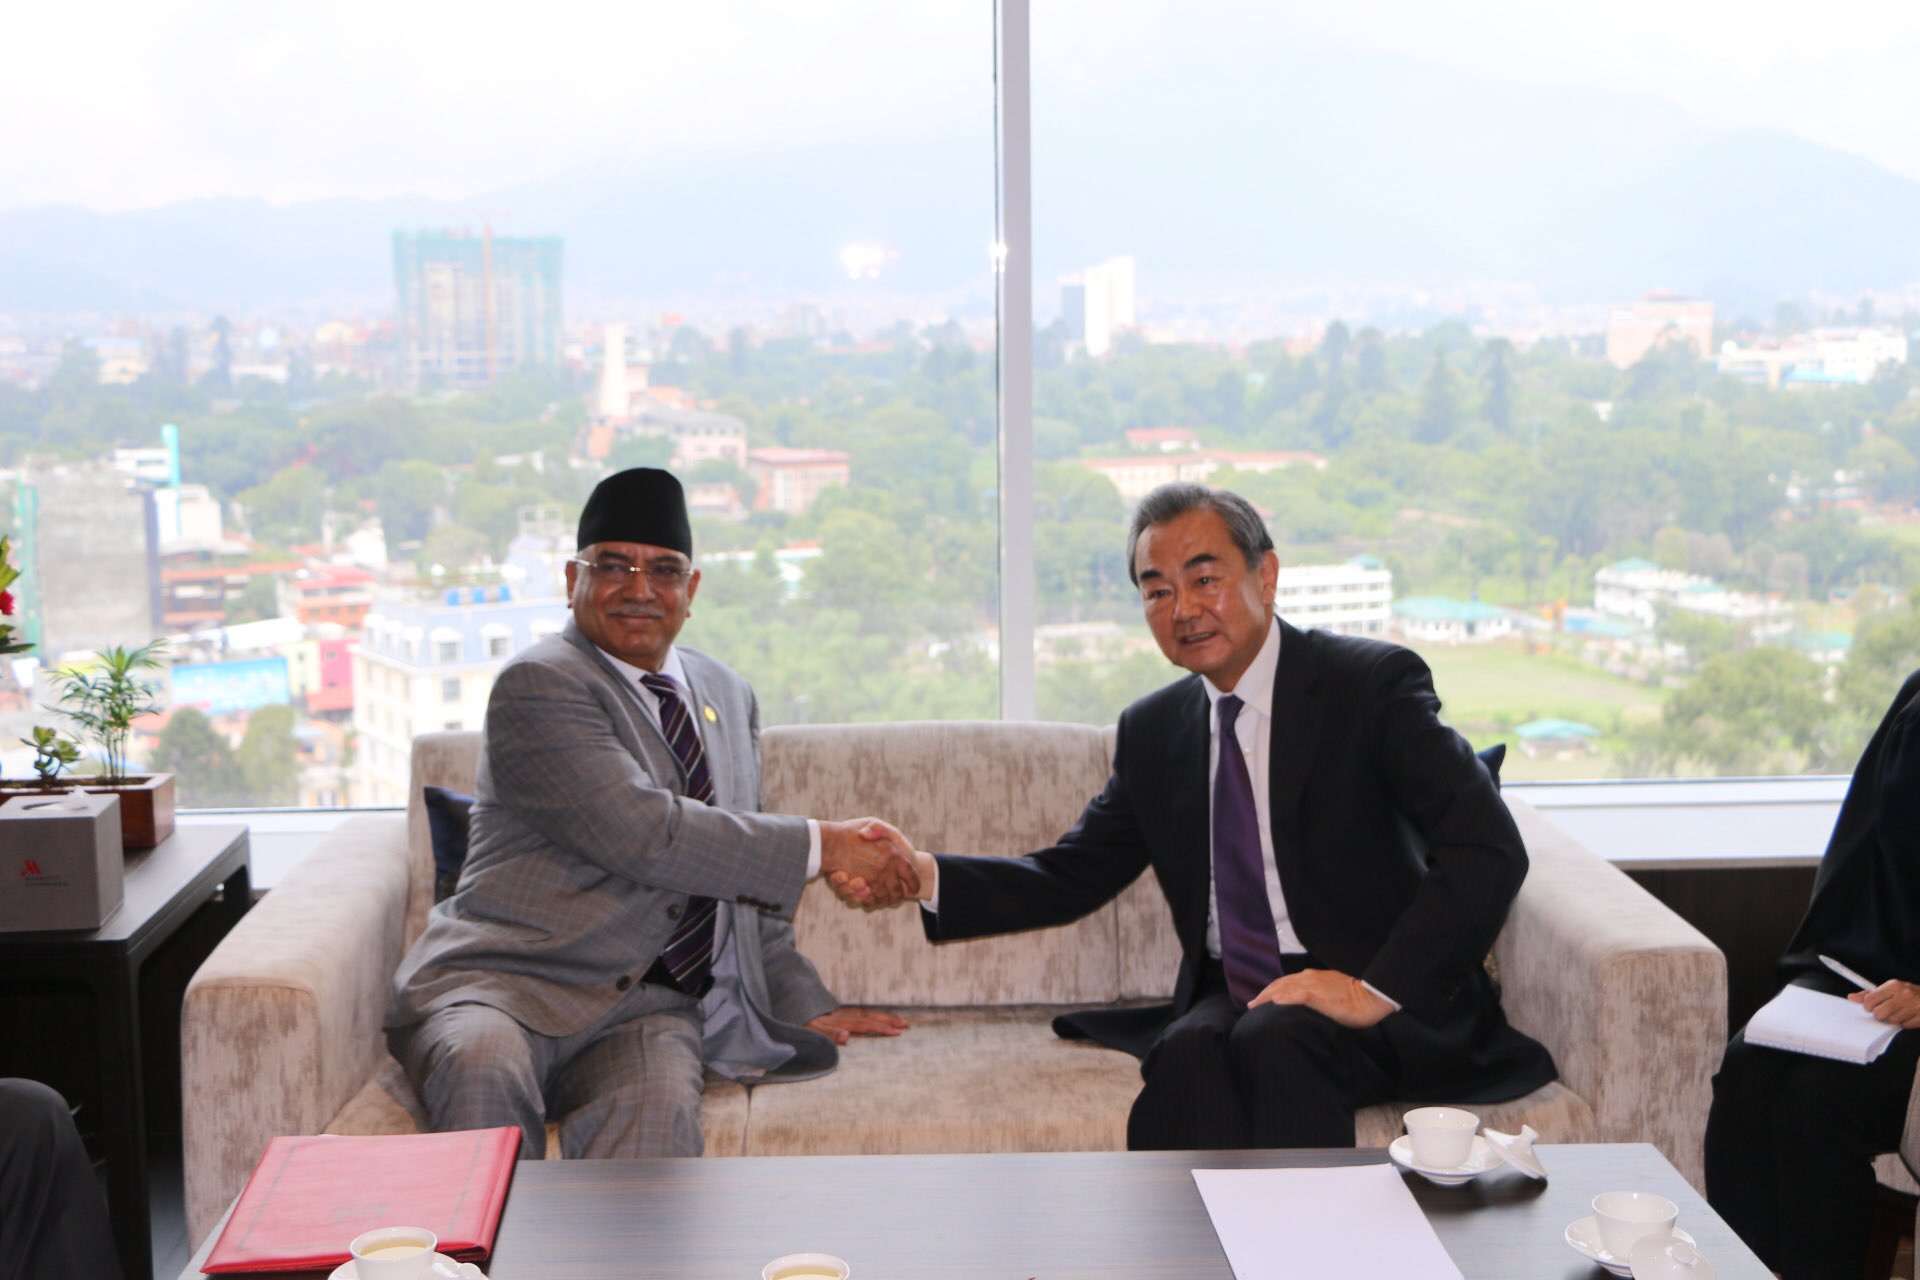 प्रचण्ड र चिनियाँ विदेशमन्त्रीबीच राष्ट्रपति सीको नेपाल भ्रमणबारे छलफल